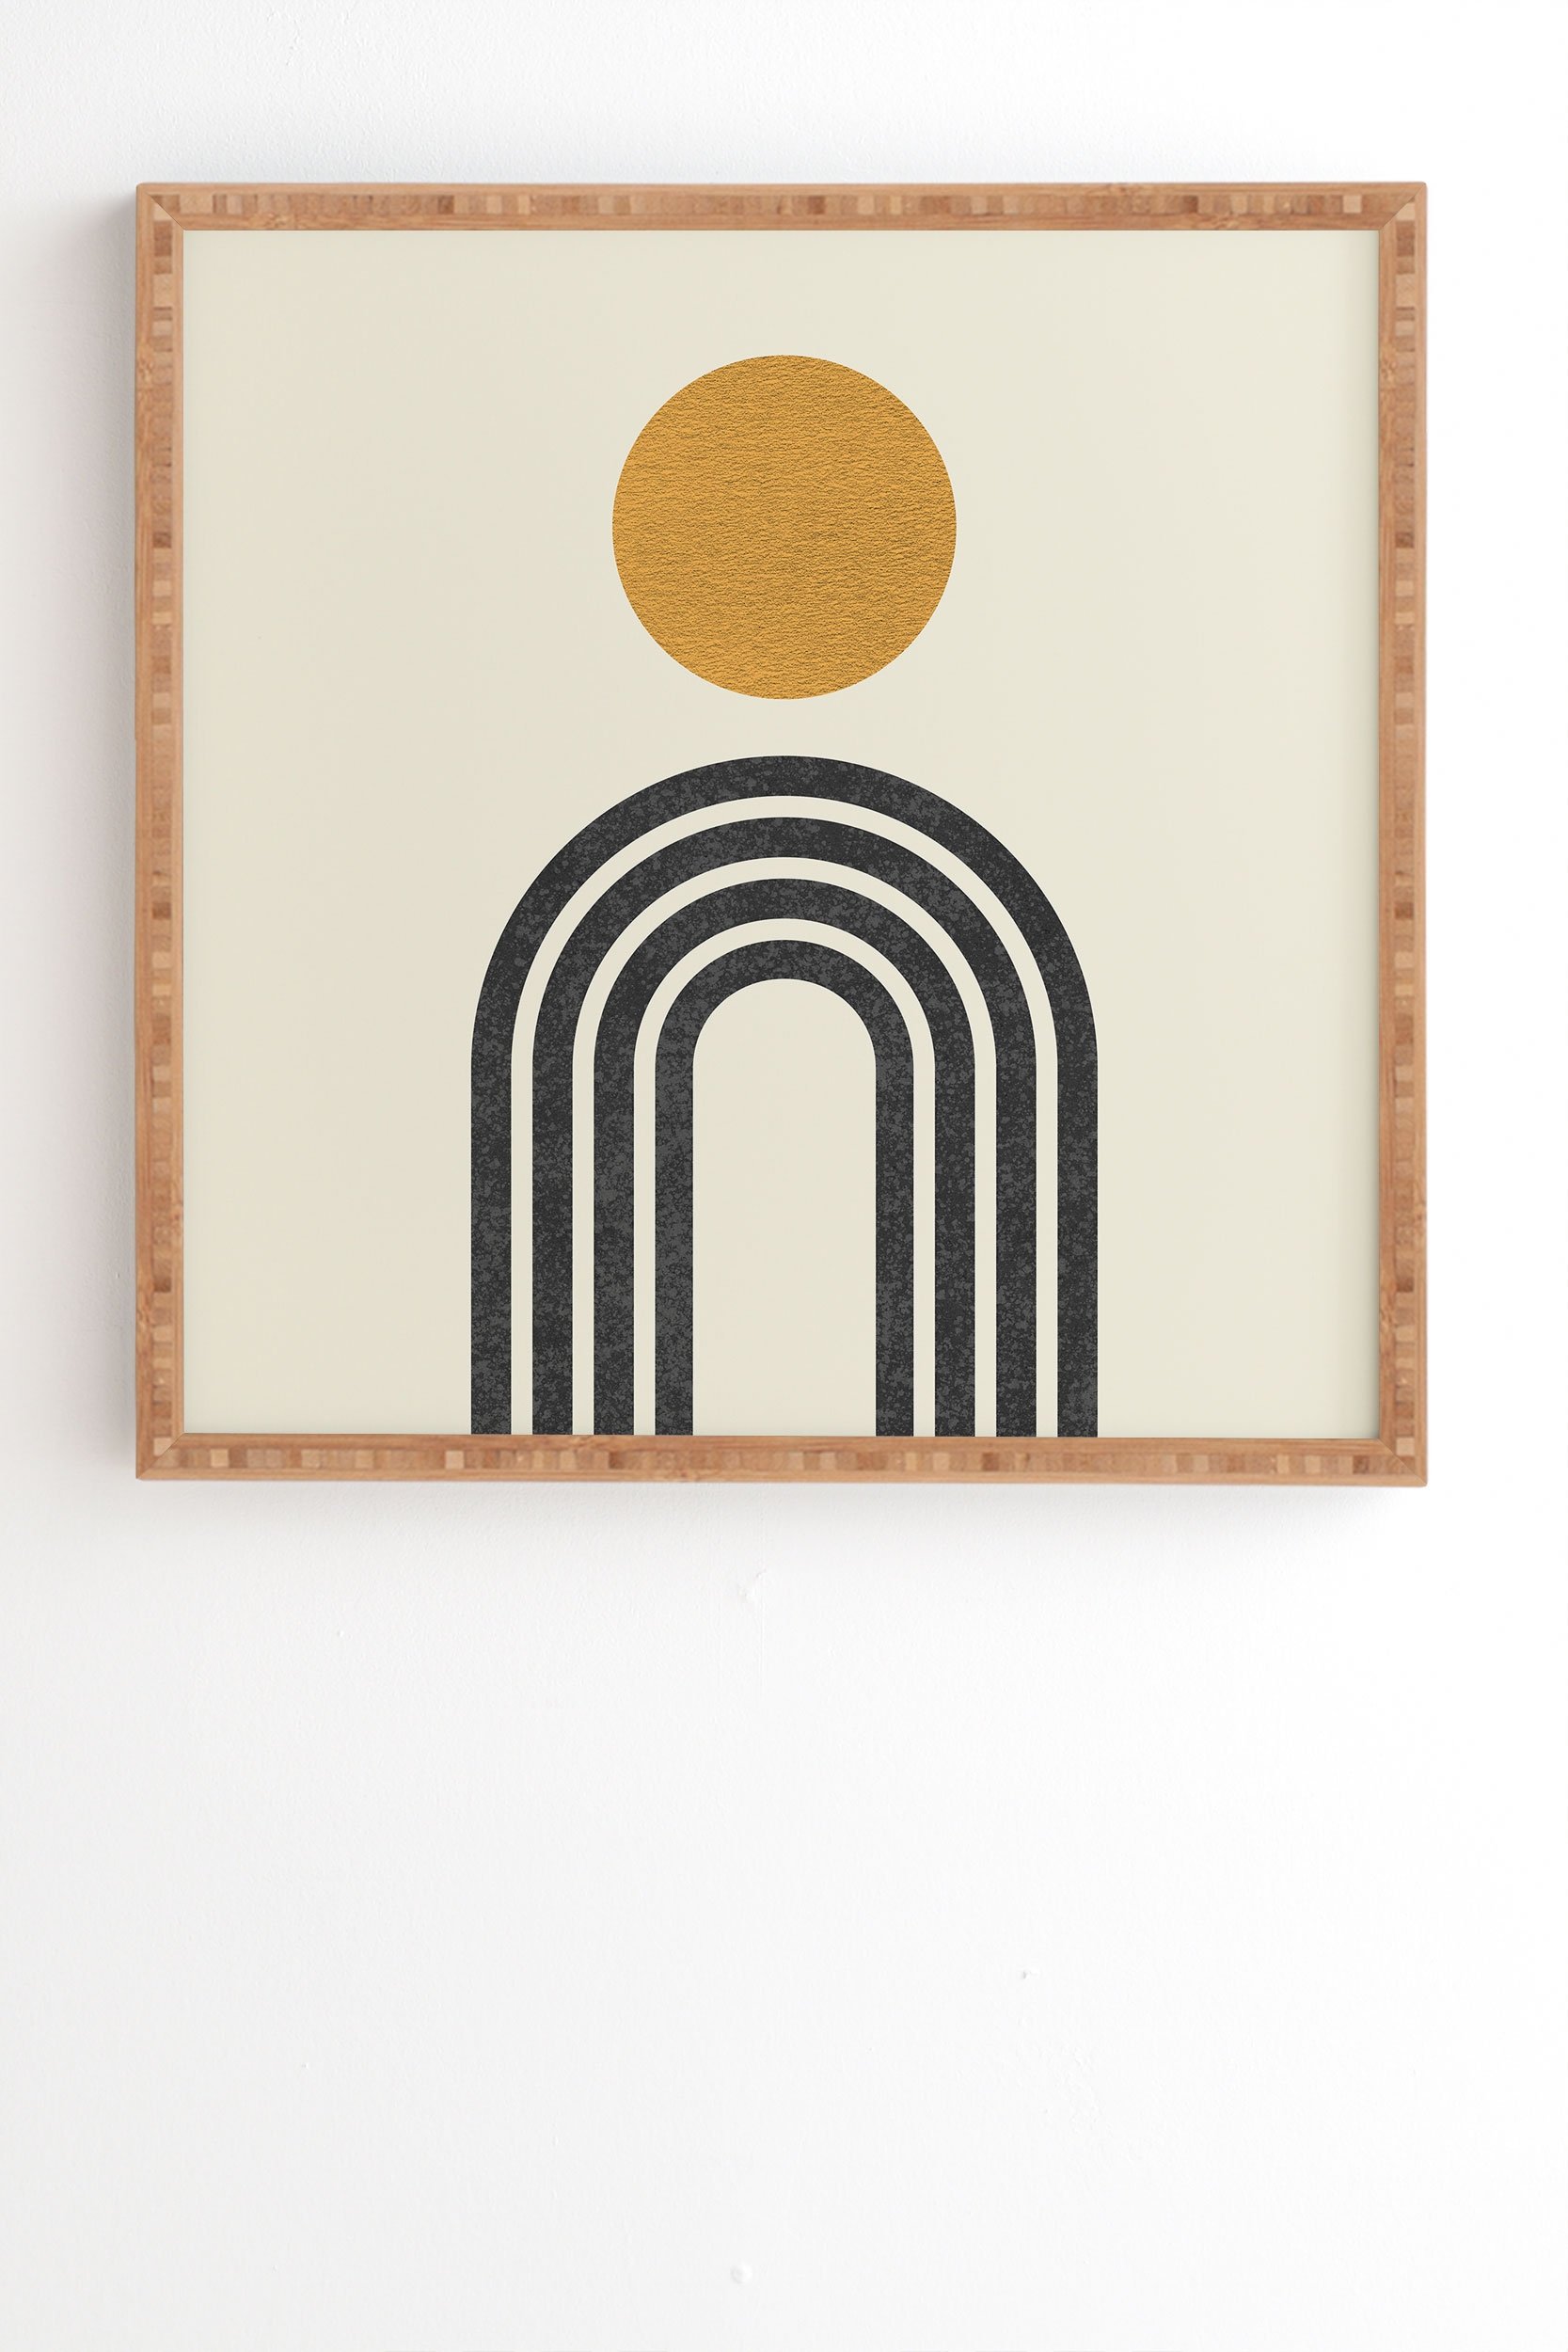 Mid Century Modern Gold Sun by MoonlightPrint - Framed Wall Art Bamboo 19" x 22.4" - Image 1